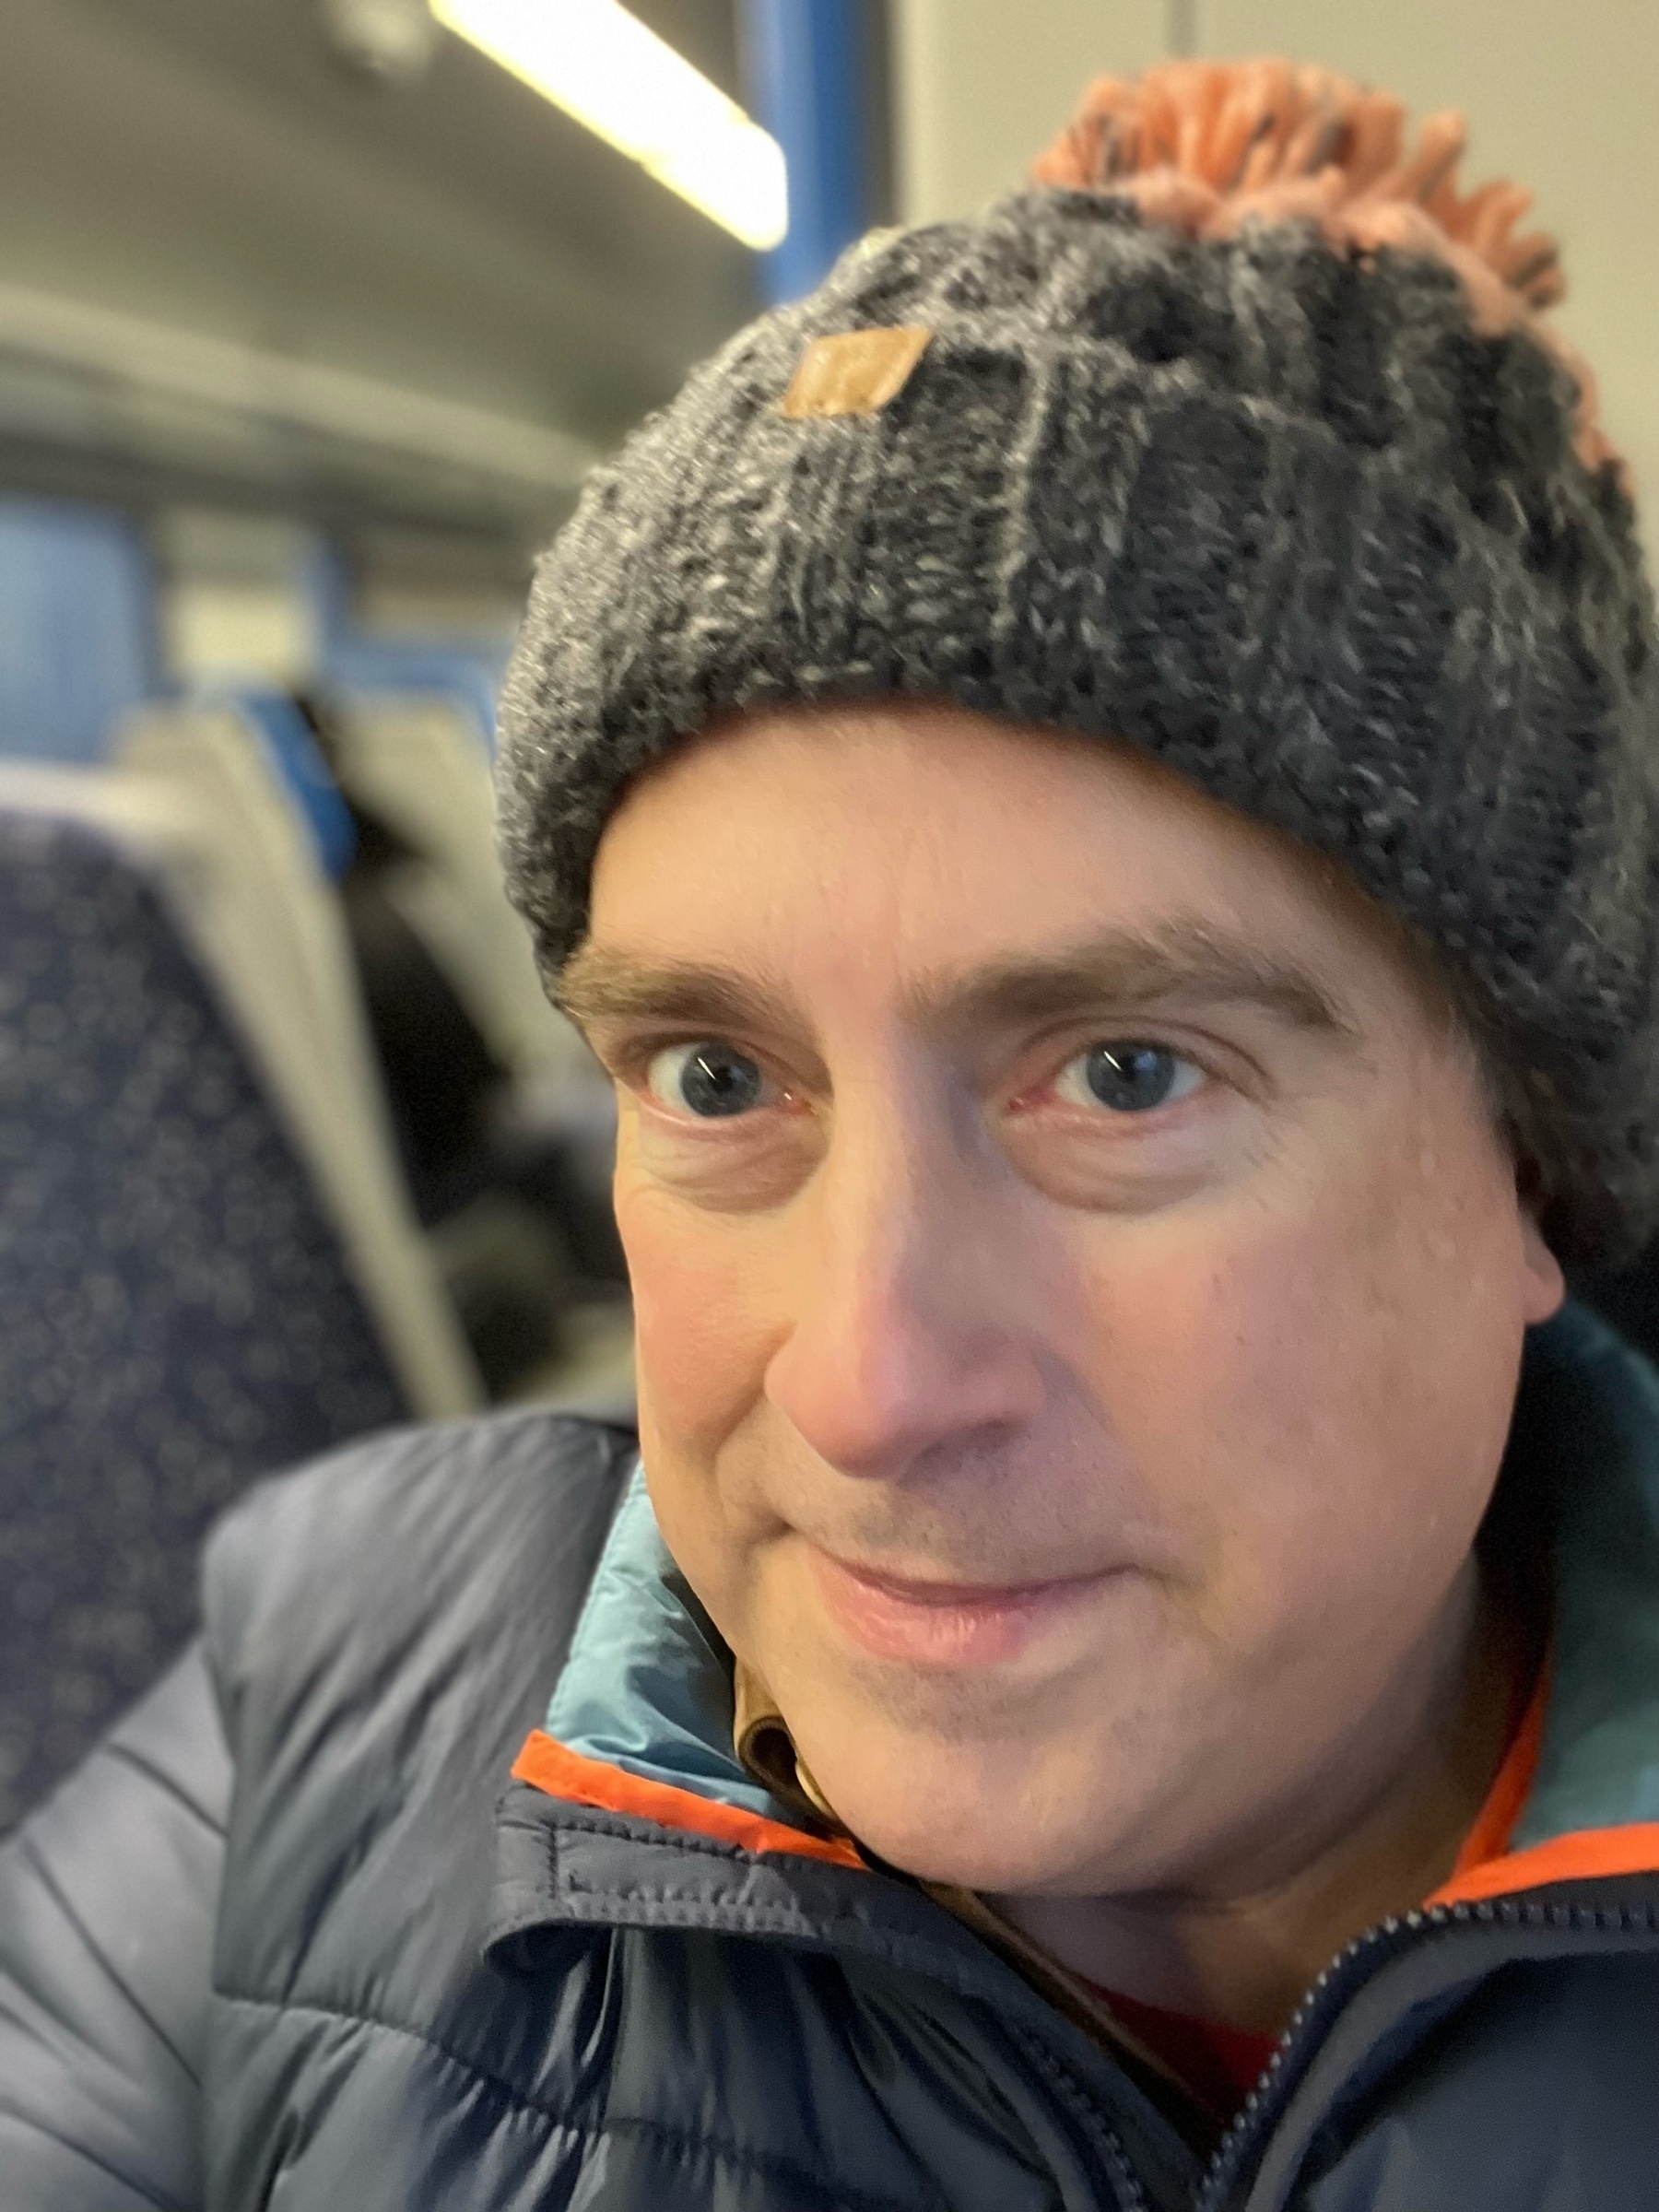 Adam on a train, wearing a woolly hat. 